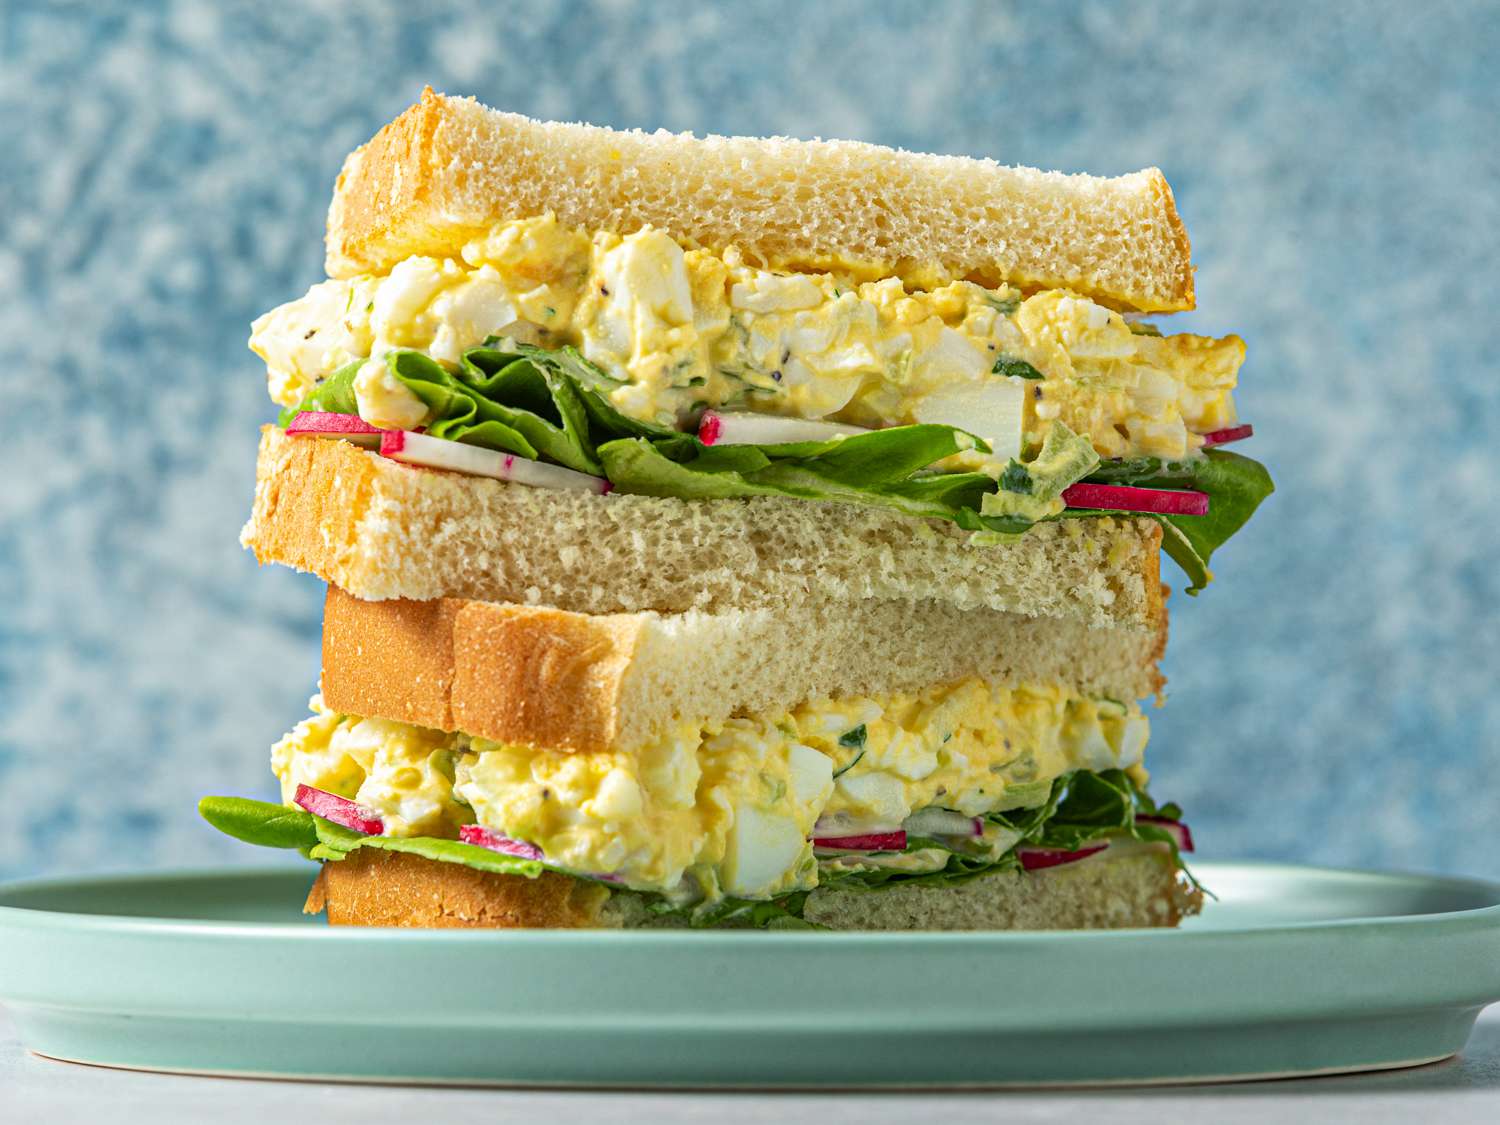 鸡蛋沙拉三明治，切成两半，两半叠在一起。三明治里有鸡蛋沙拉、黄油生菜和切成薄片的萝卜。